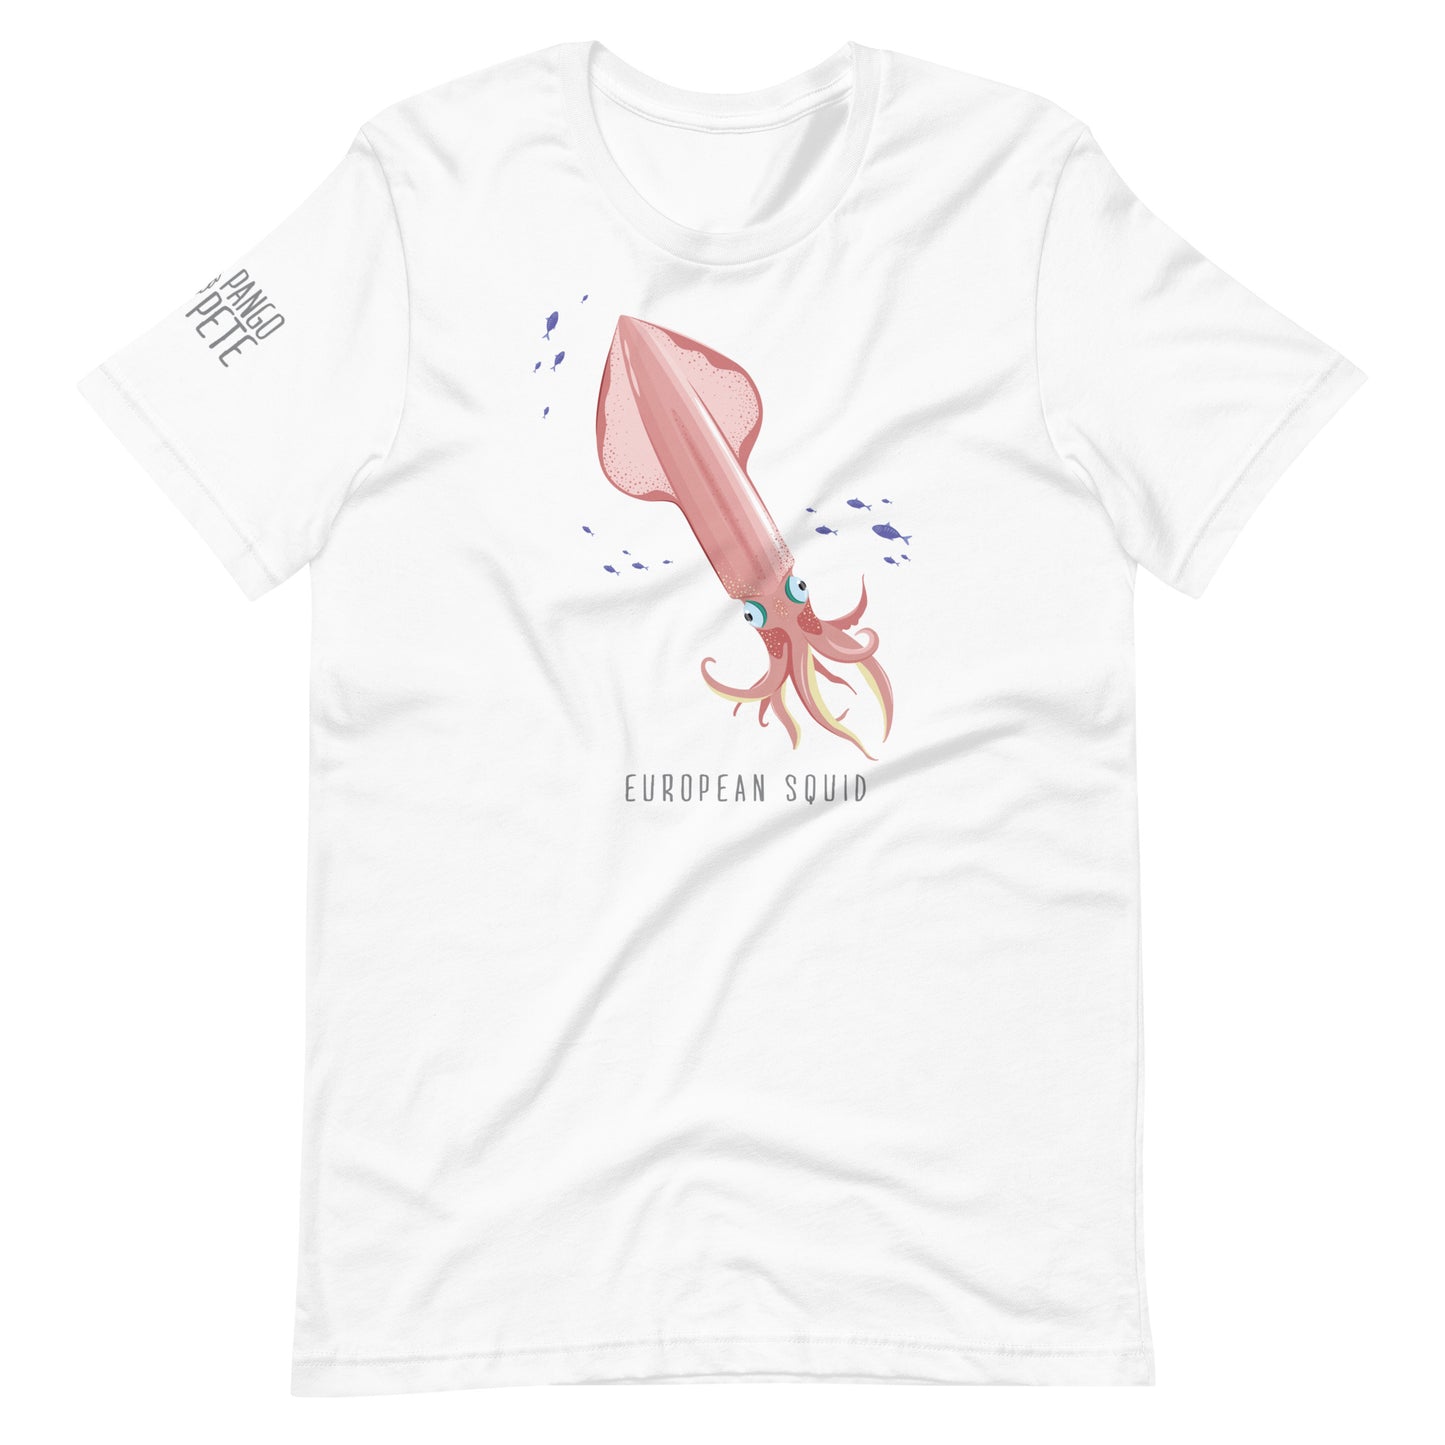 European Squid T-shirt